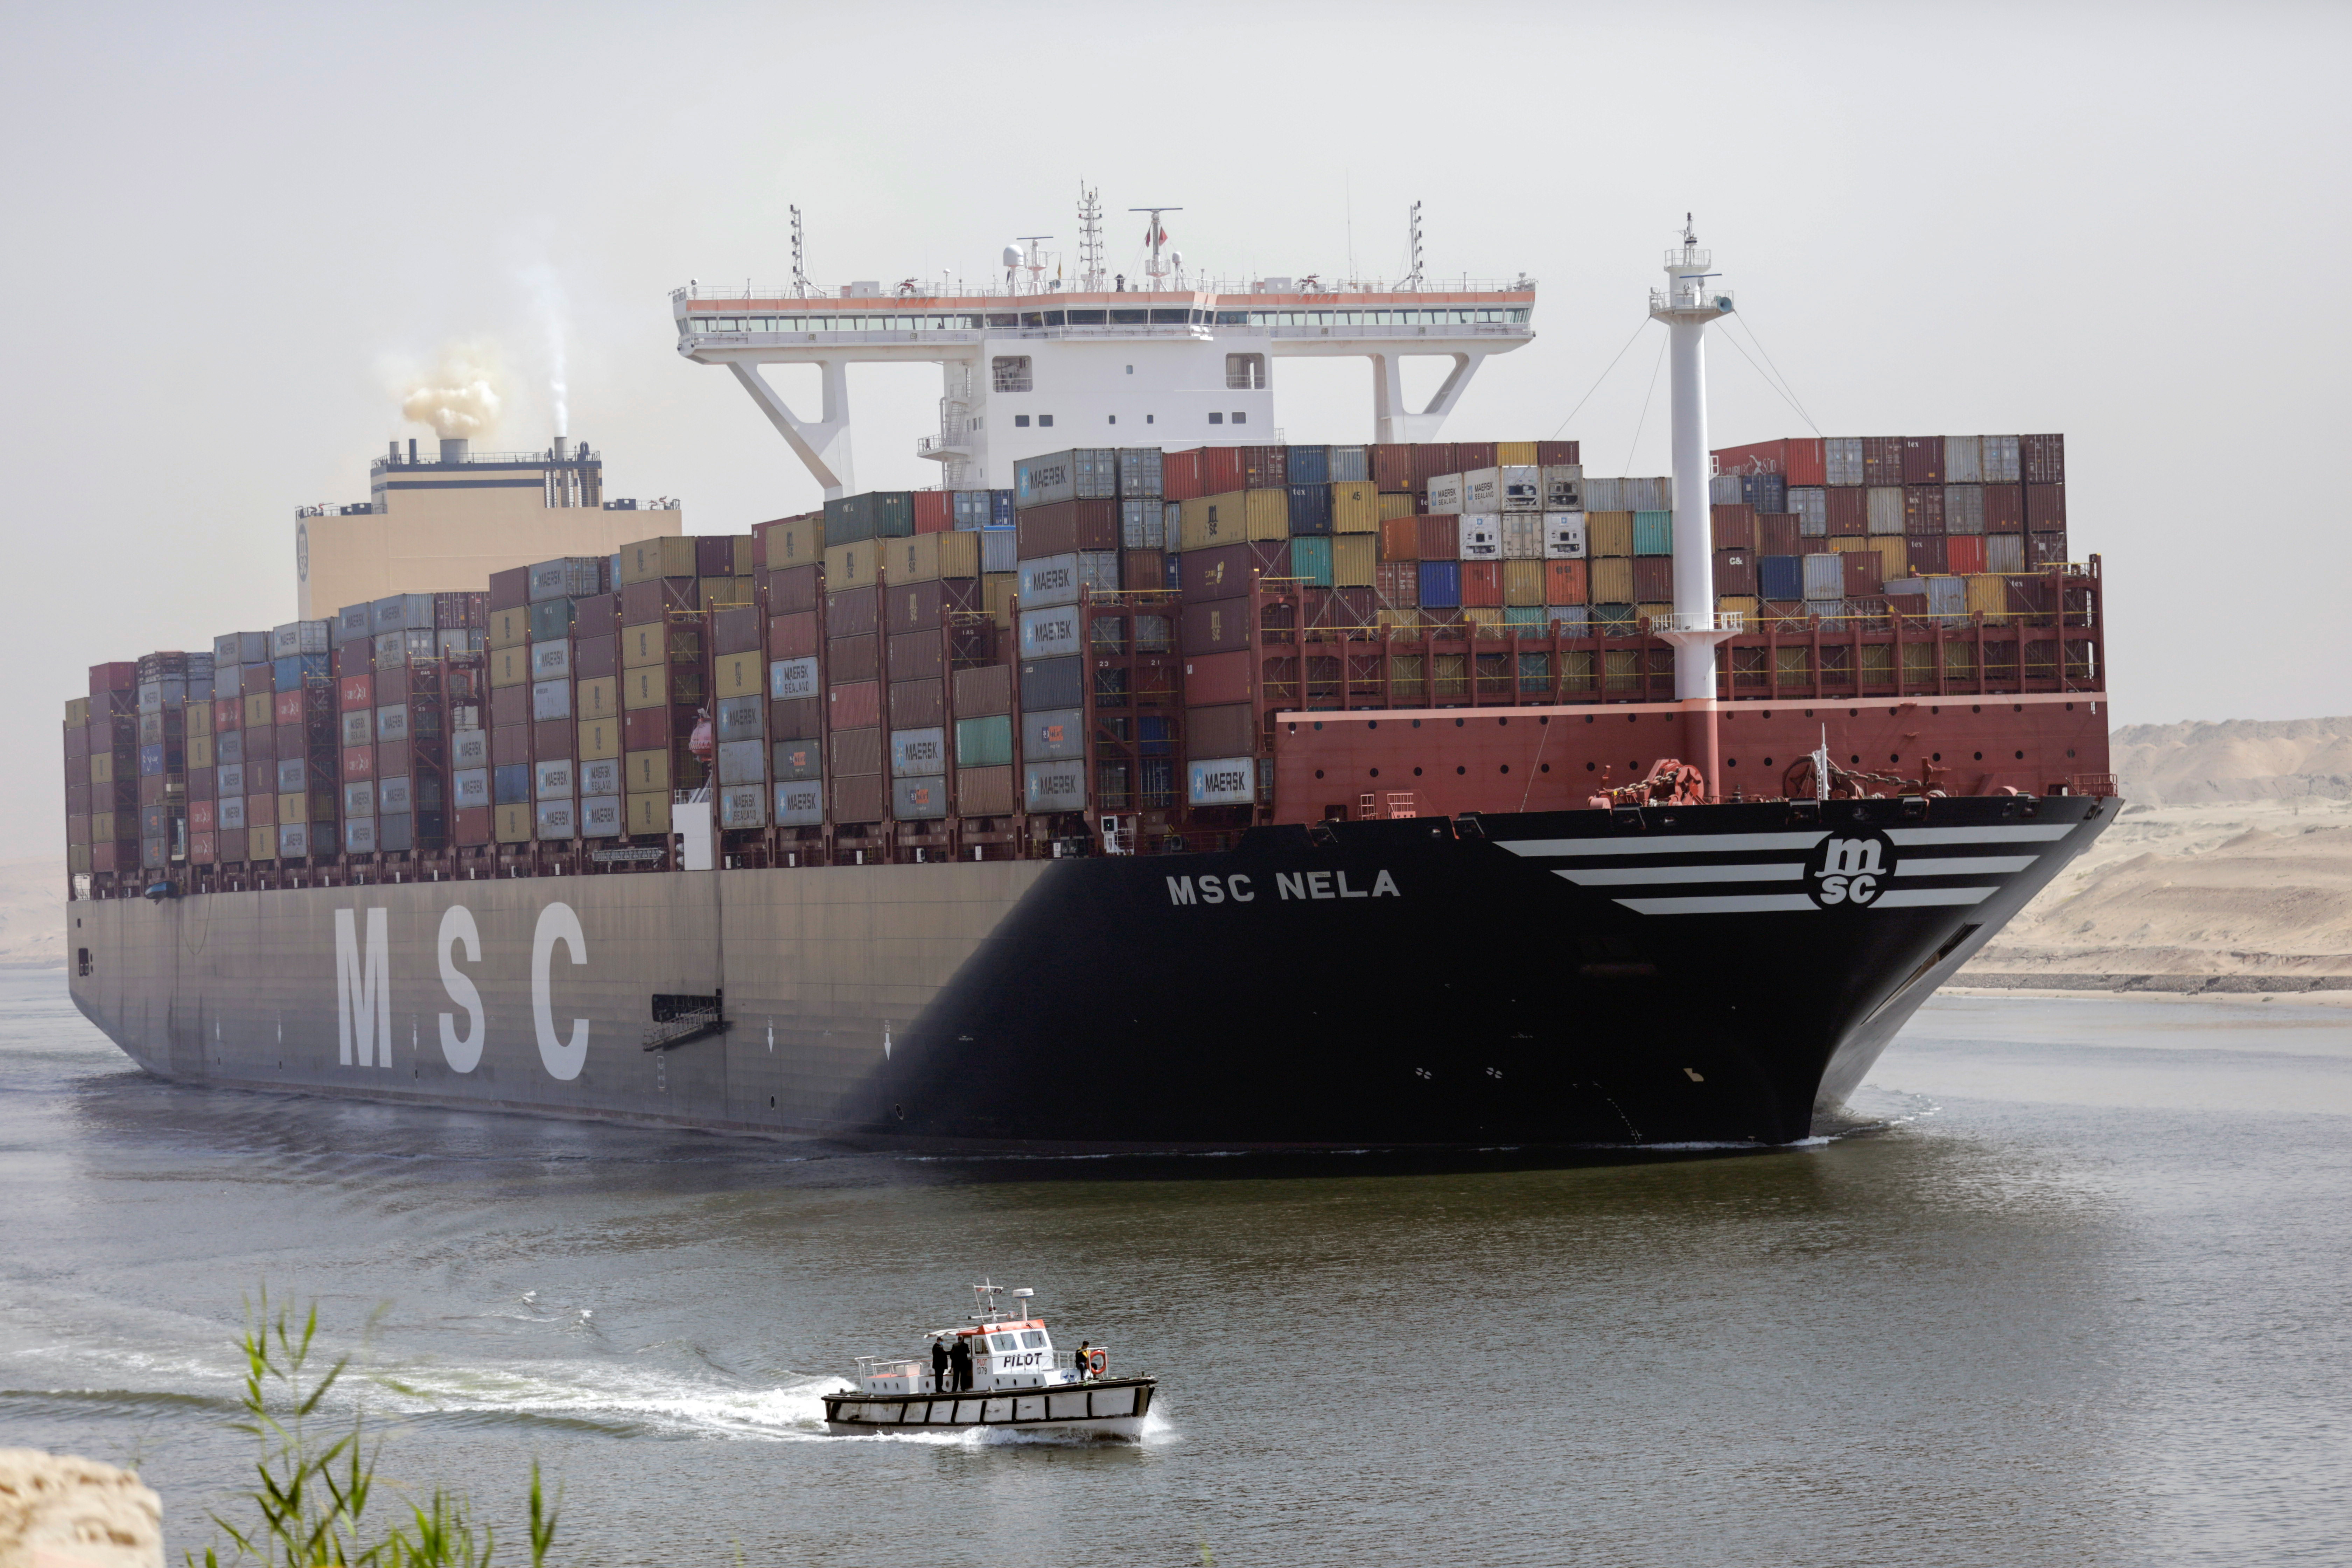 Un barco petrolero con problemas técnicos vuelve a ralentizar el tráfico por el Canal de Suez